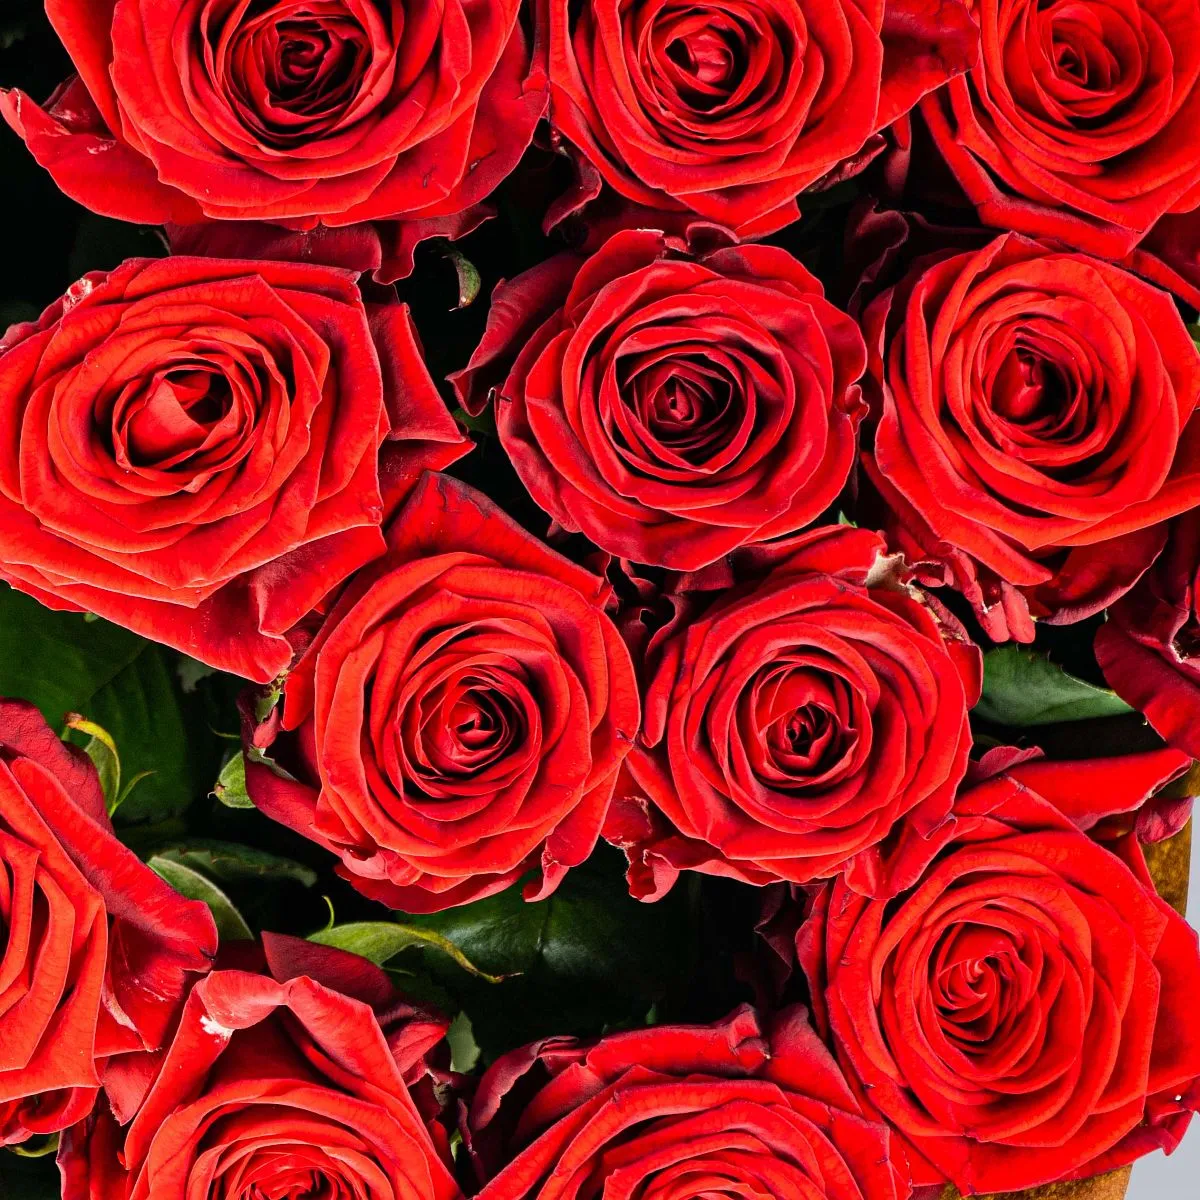 39 красных роз (50 см)